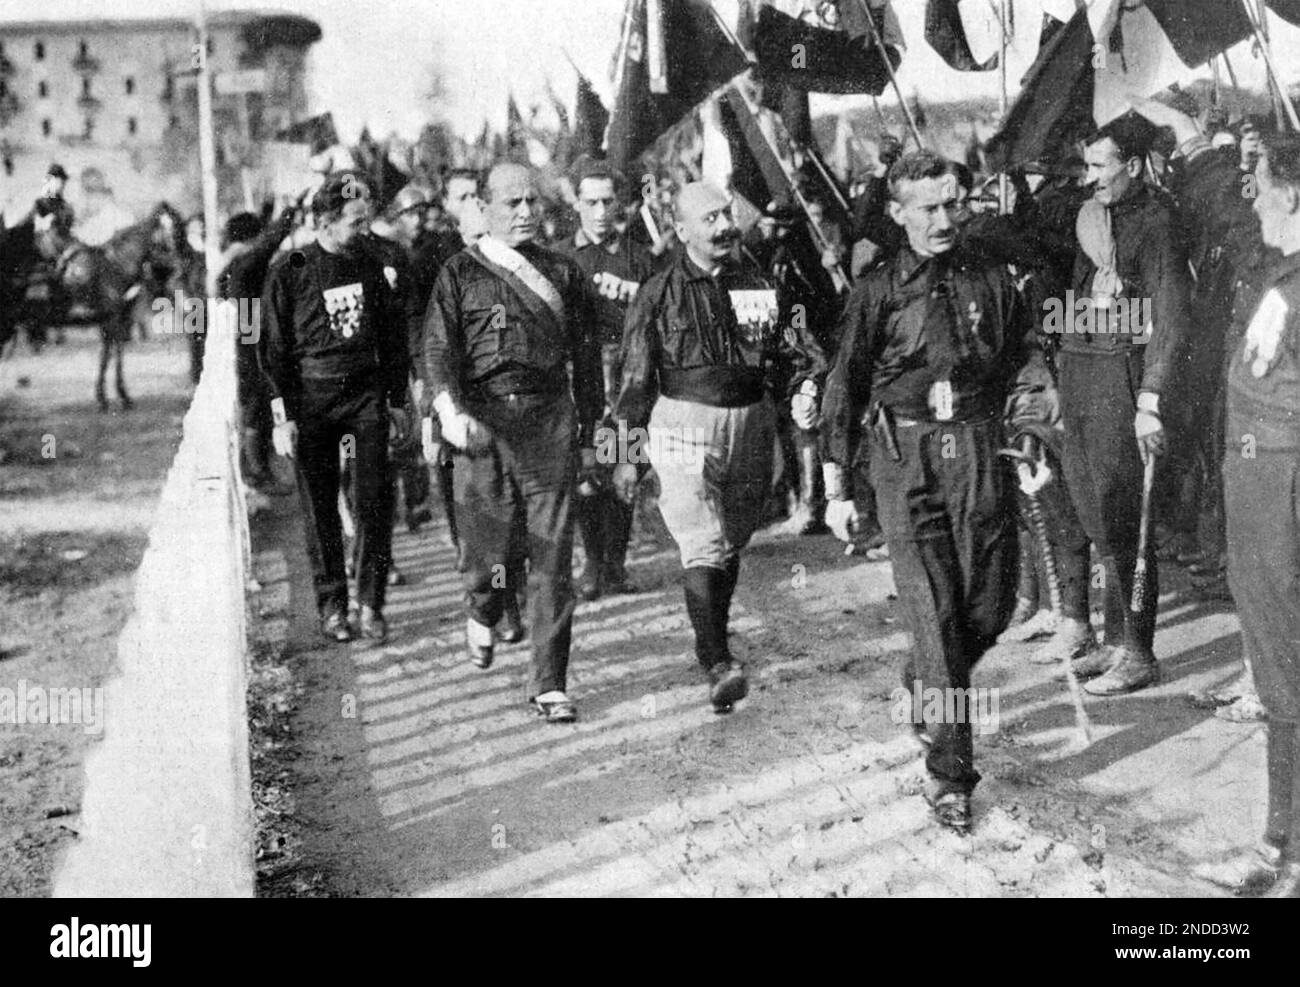 BENITO MUSSOLINI (1883-1945) dictateur italien lors de sa marche sur Rome en 1922 Banque D'Images